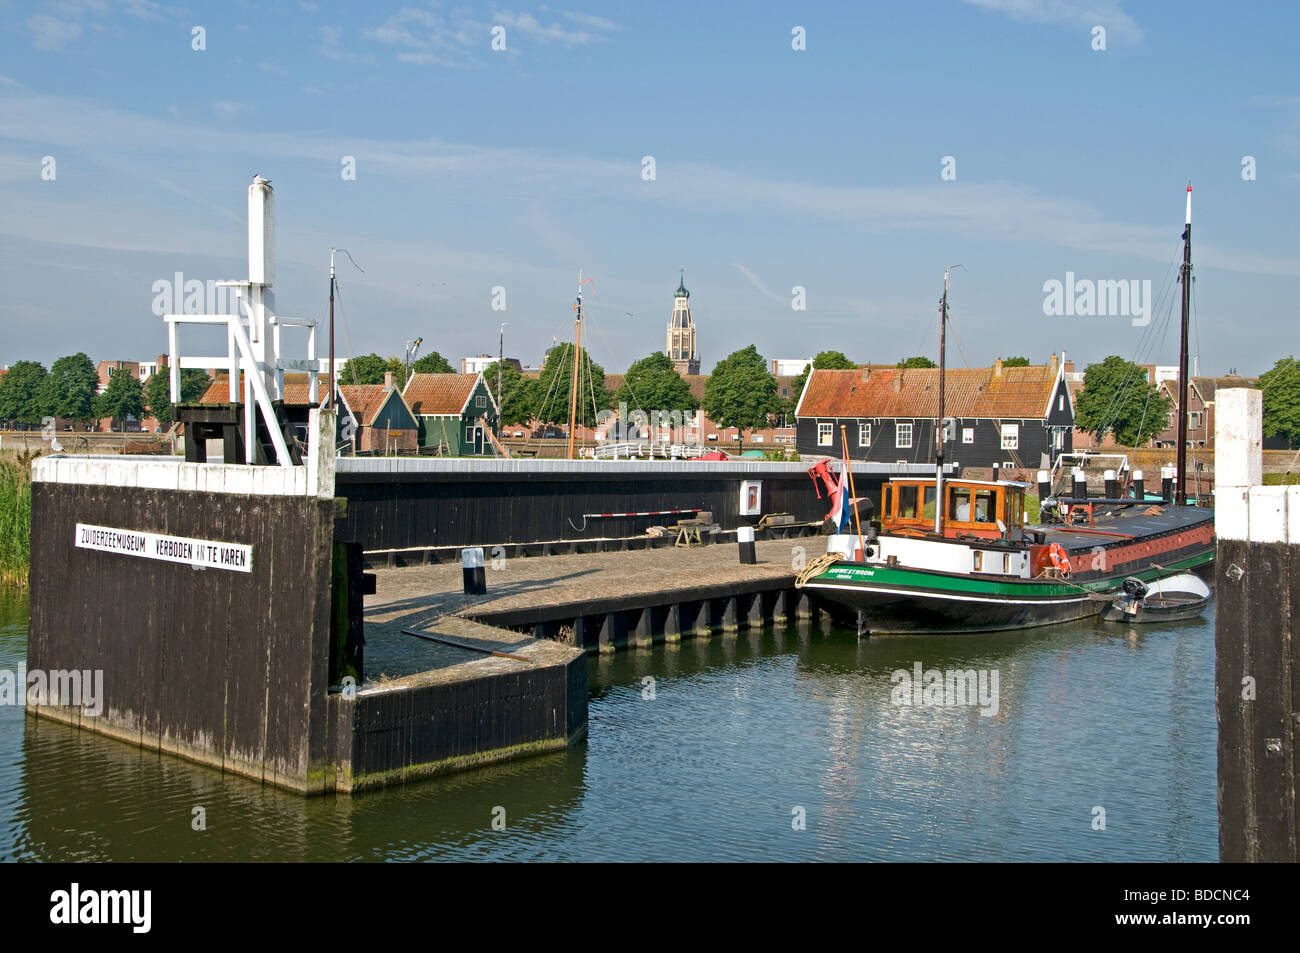 Musée Zuiderzee, Enkhuizen, préserver le patrimoine culturel - l'histoire maritime de l'ancienne région de Zuiderzee. Ijsselmeer, pays-Bas Hollande, Banque D'Images